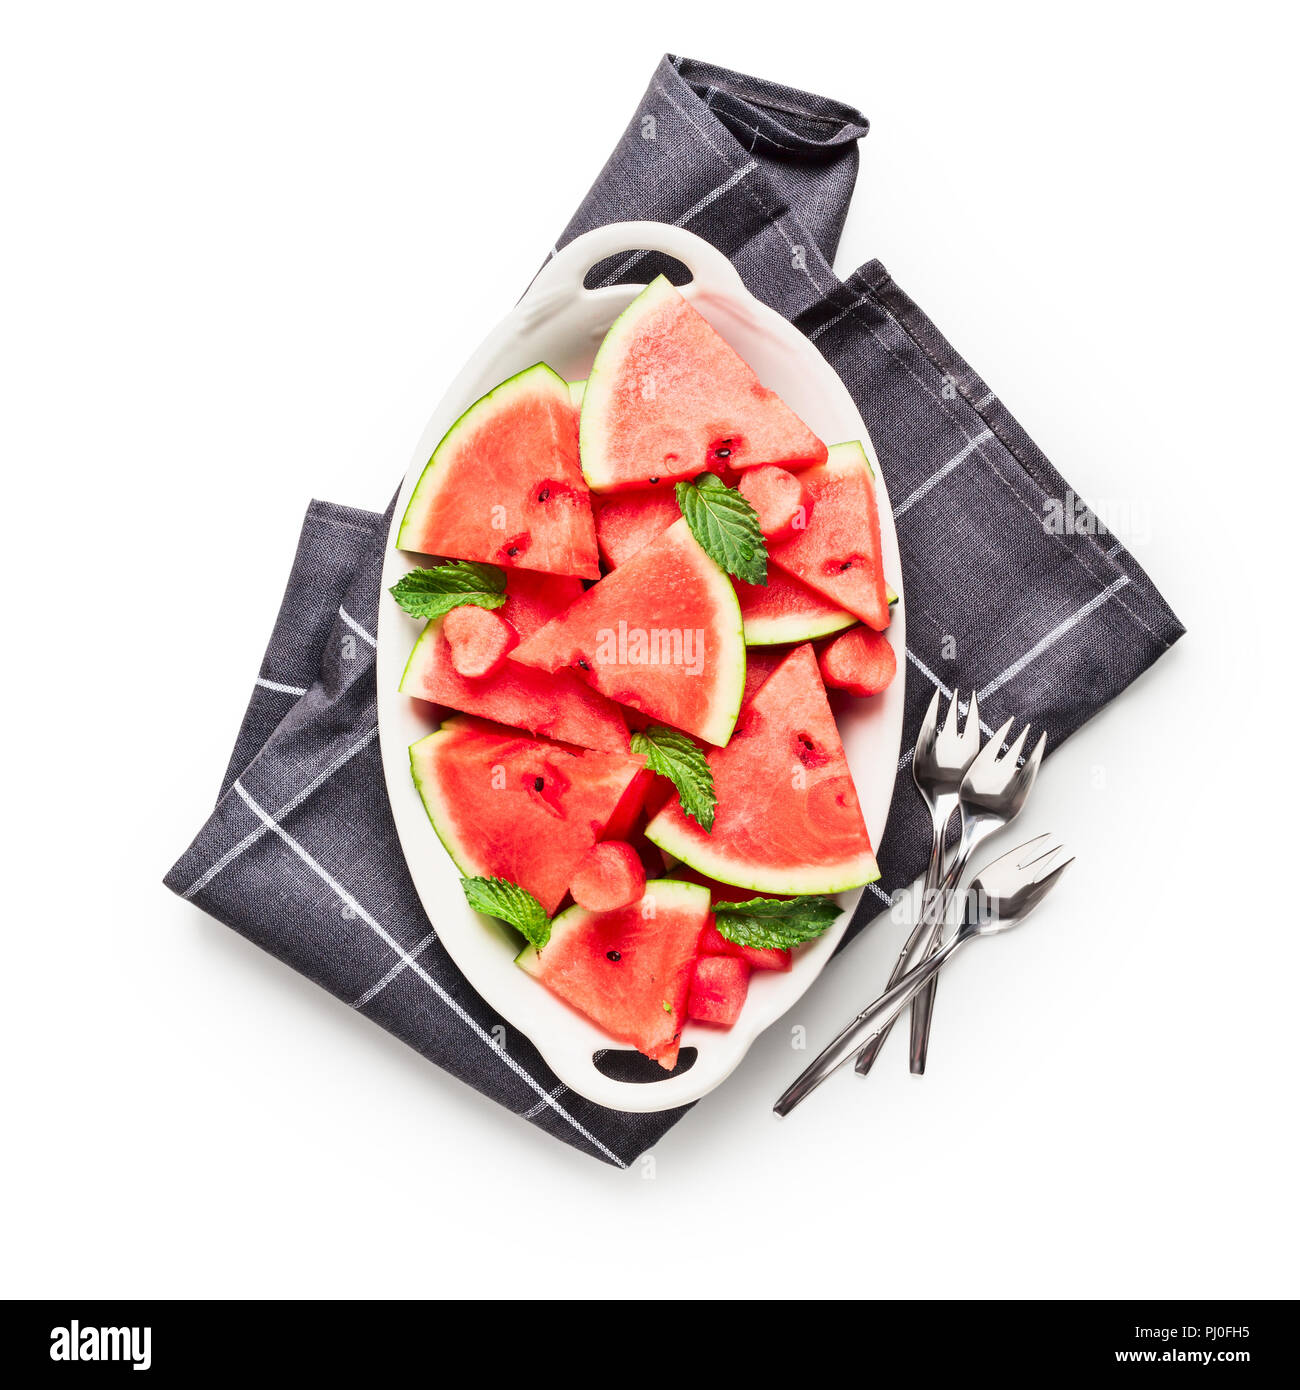 Tranches de pastèque berry, fruits frais sur la plaque avec serviette et fourches. Groupe d'objets isolé sur fond blanc chemin de détourage inclus. Vue de dessus, f Banque D'Images